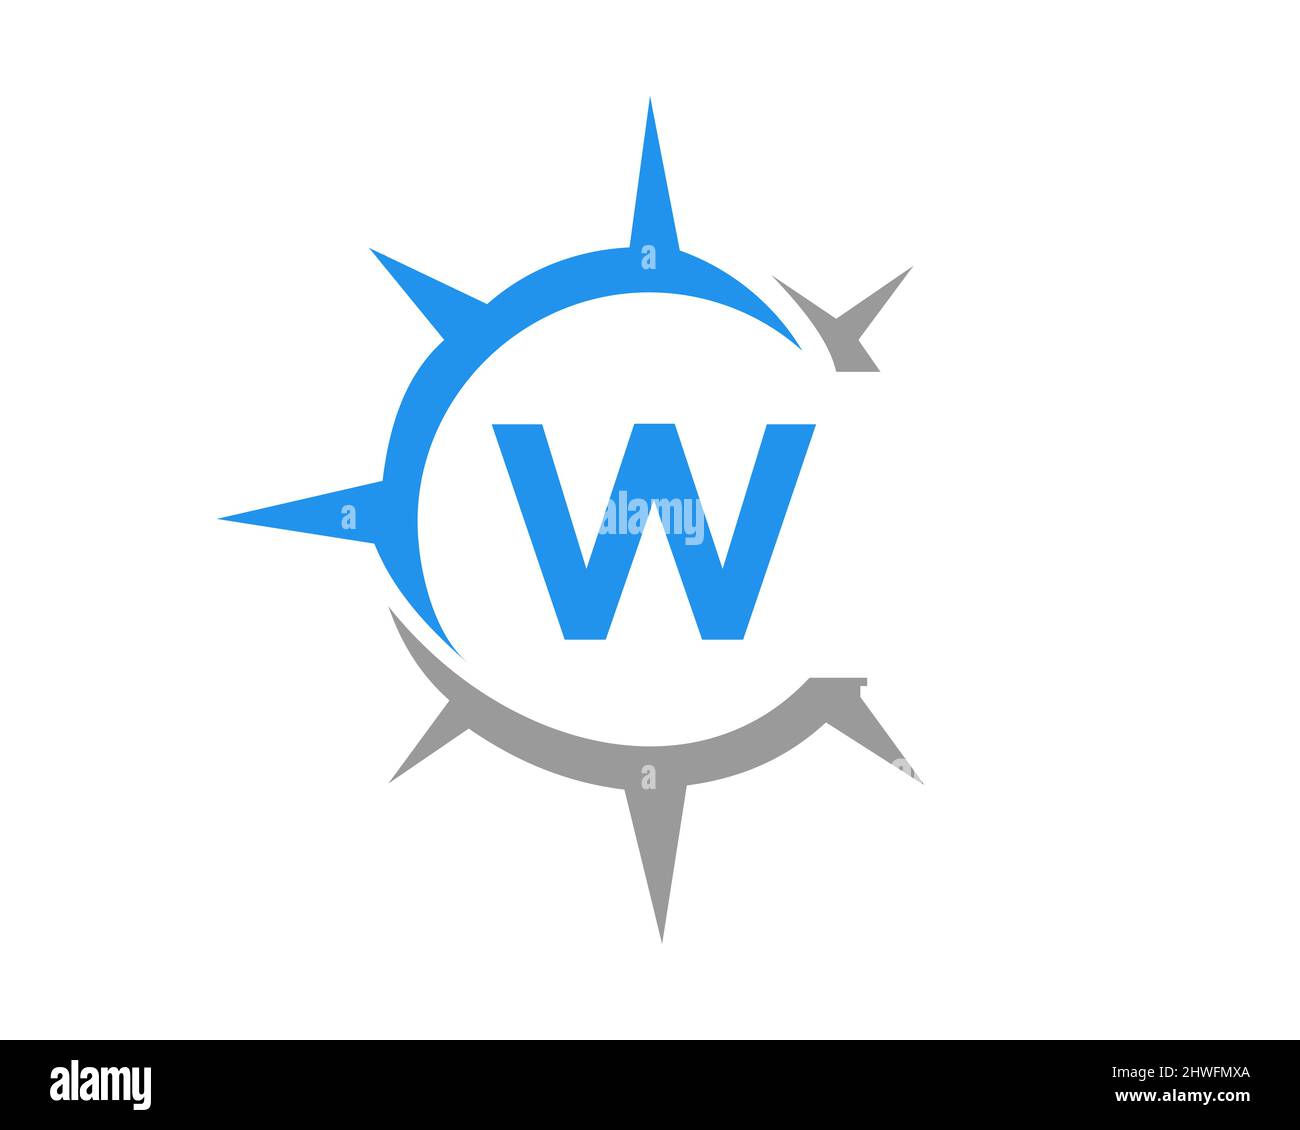 Kompass-Logo-Design mit W-Letter-Konzept. Kompasskonzept mit W-Schrift-Typografie Stock Vektor